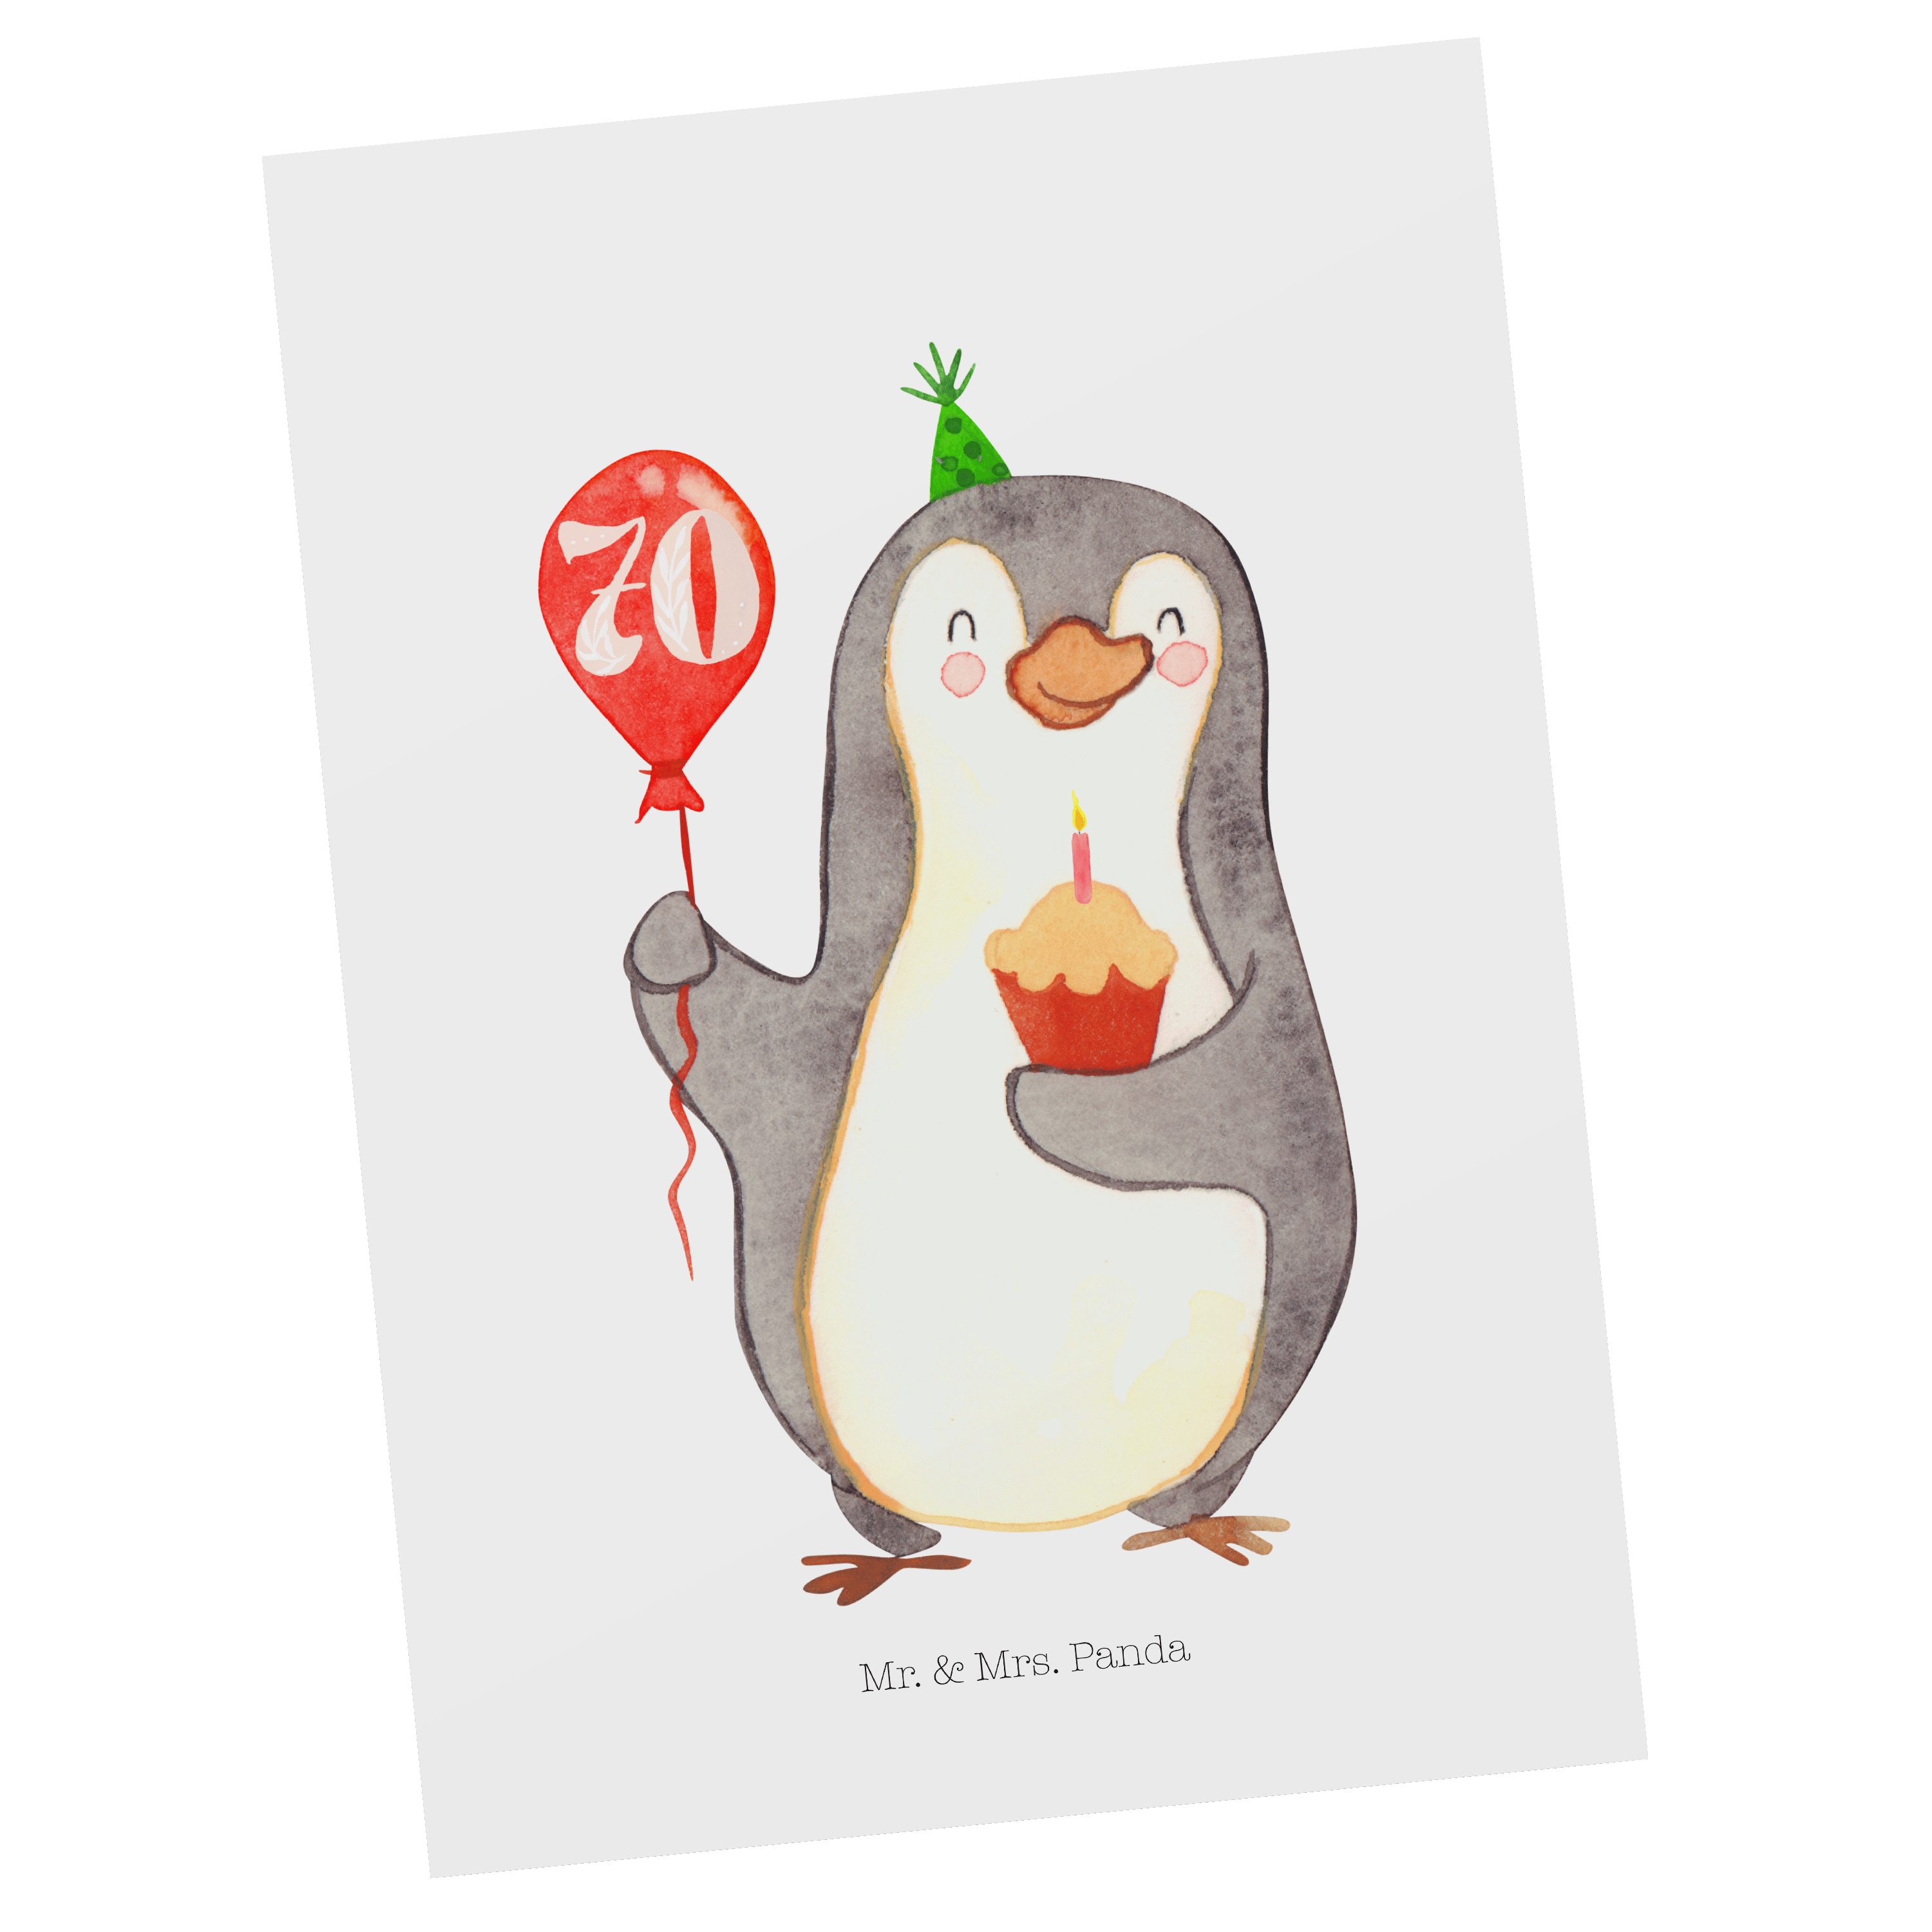 Mr. & Mrs. Panda Postkarte 70. Geburtstag Pinguin Luftballon - Weiß - Geschenk, Happy Birthday